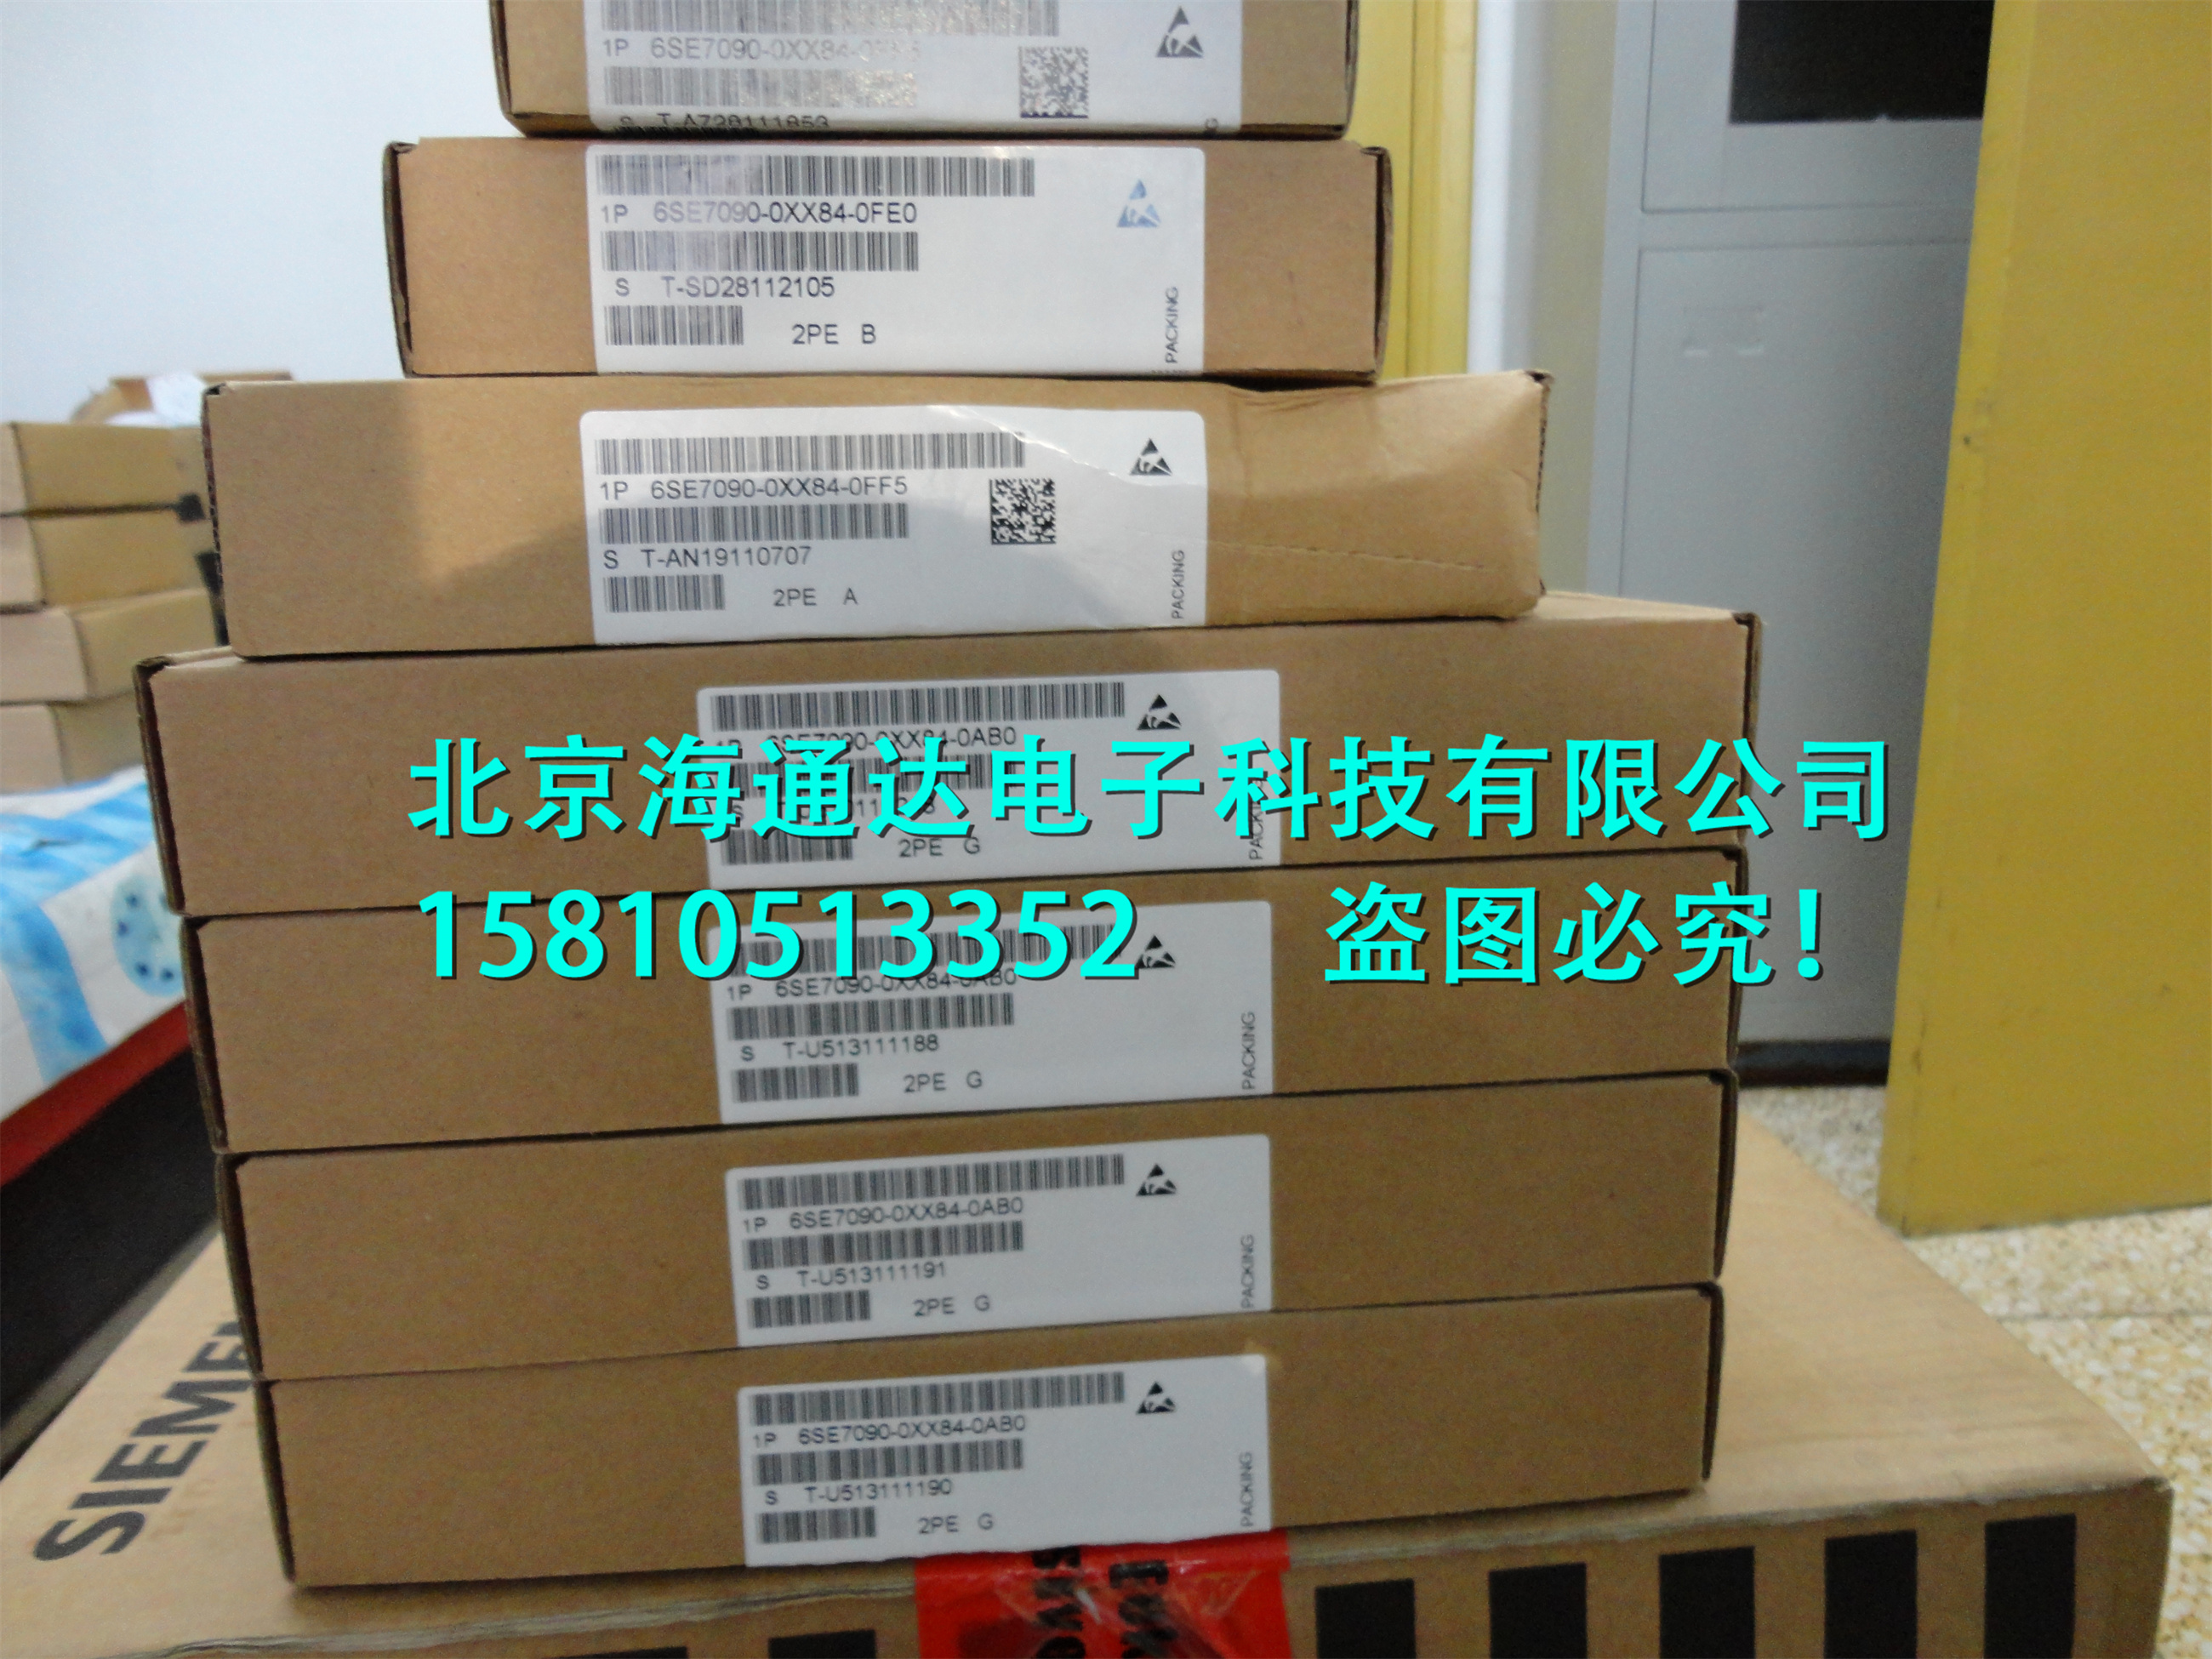 出售6DD1606-0AD1全新原装T400工艺板A5E00496009 